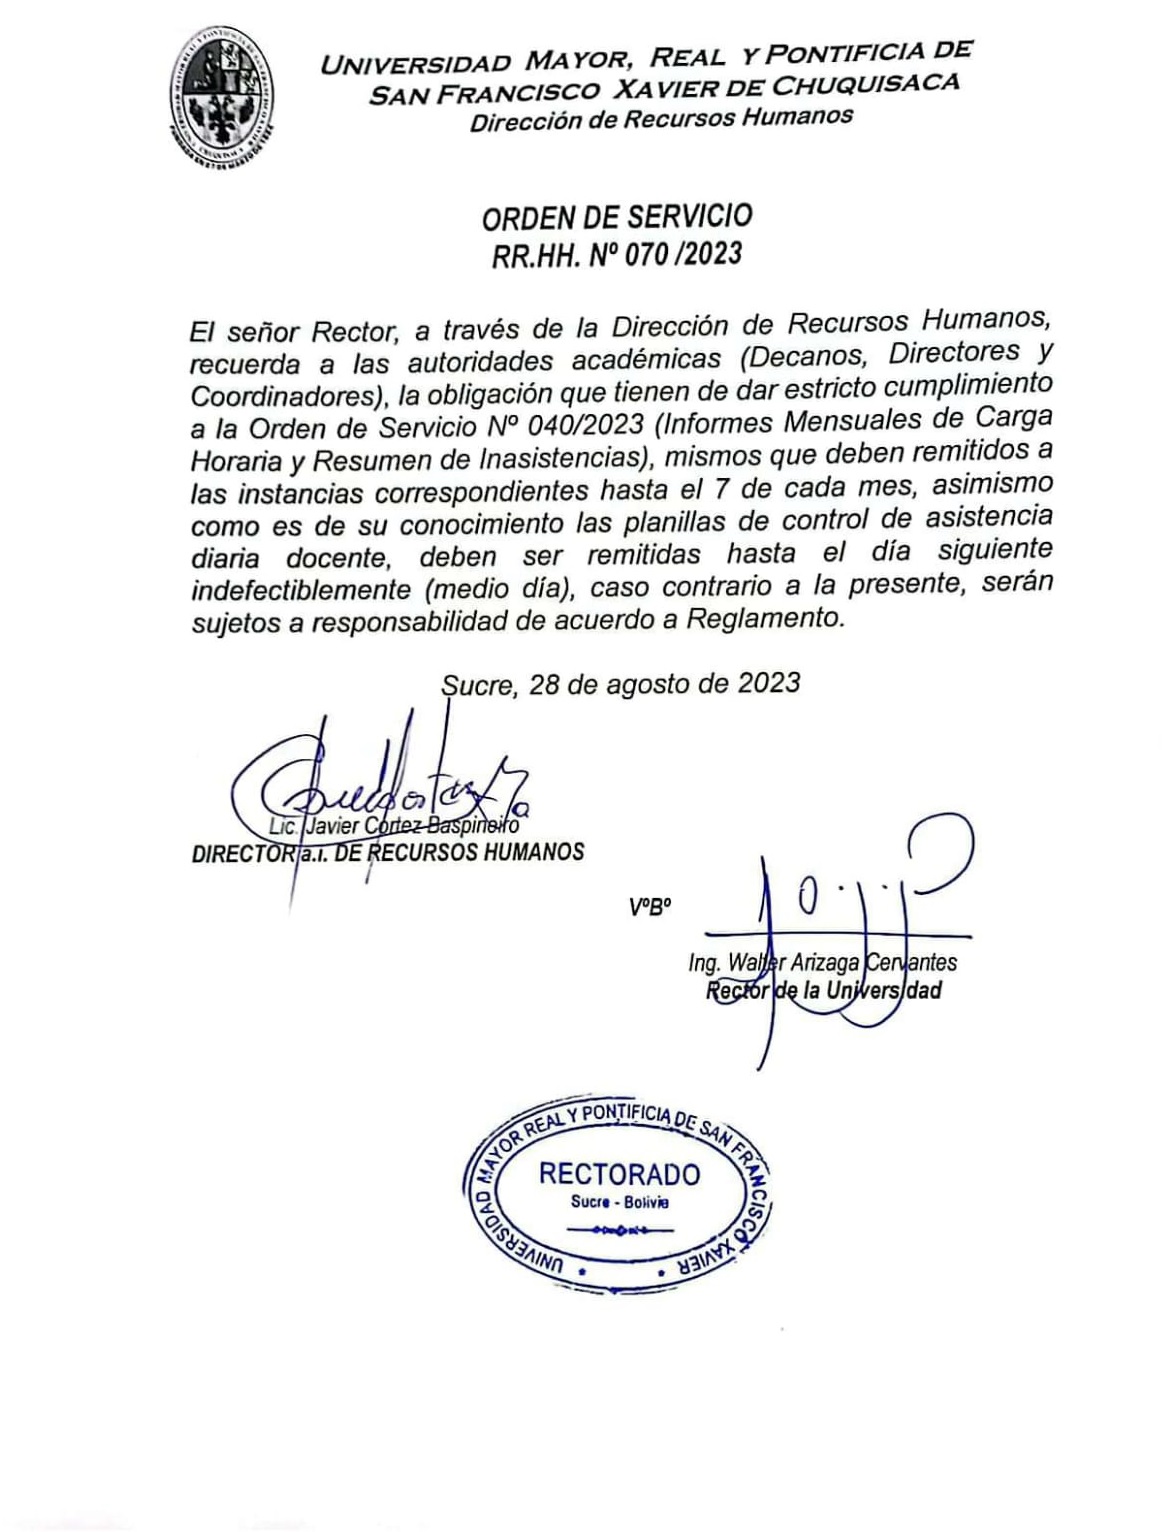 ORDEN DE SERVICIO RR.HH. Nº 070/2023, INFORMES DE INASISTENCIA Y CARGA HORARIA.